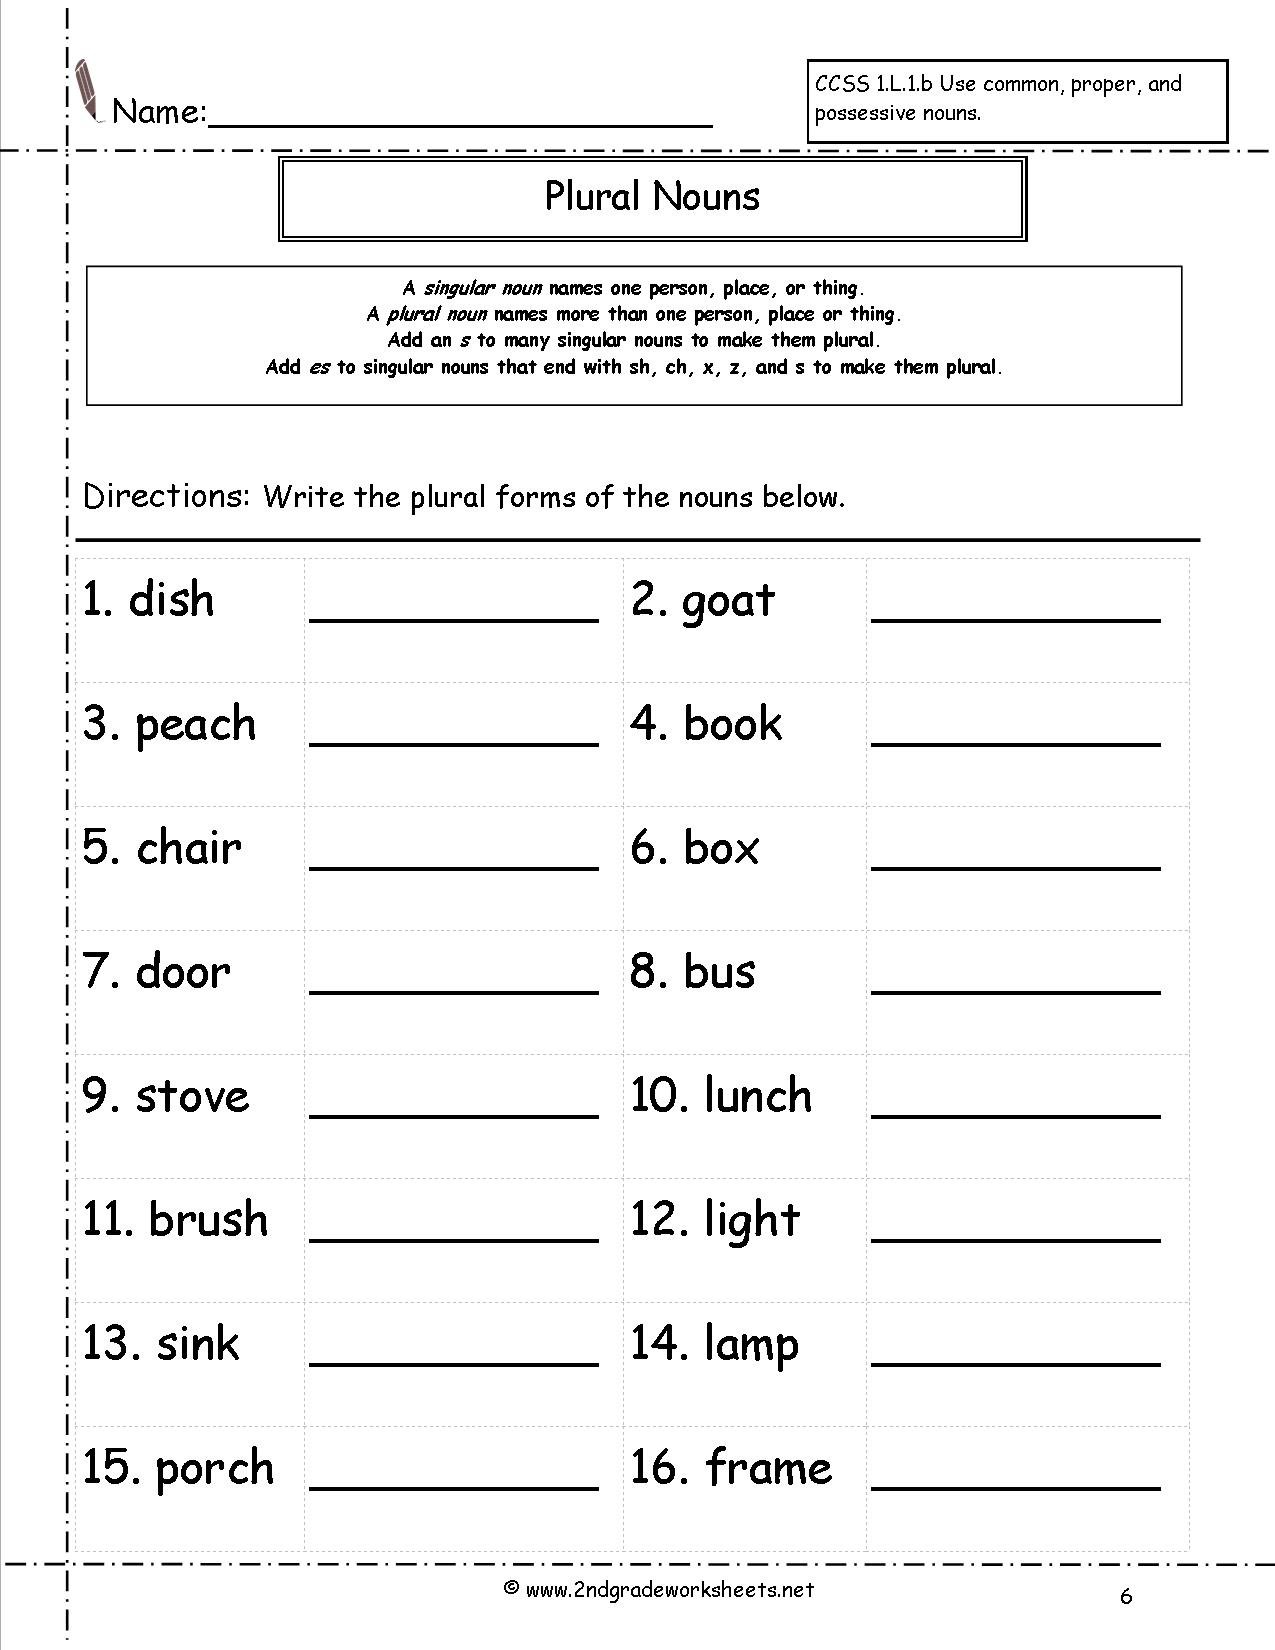 Singular Plural Nouns Worksheet The Best Worksheets Image